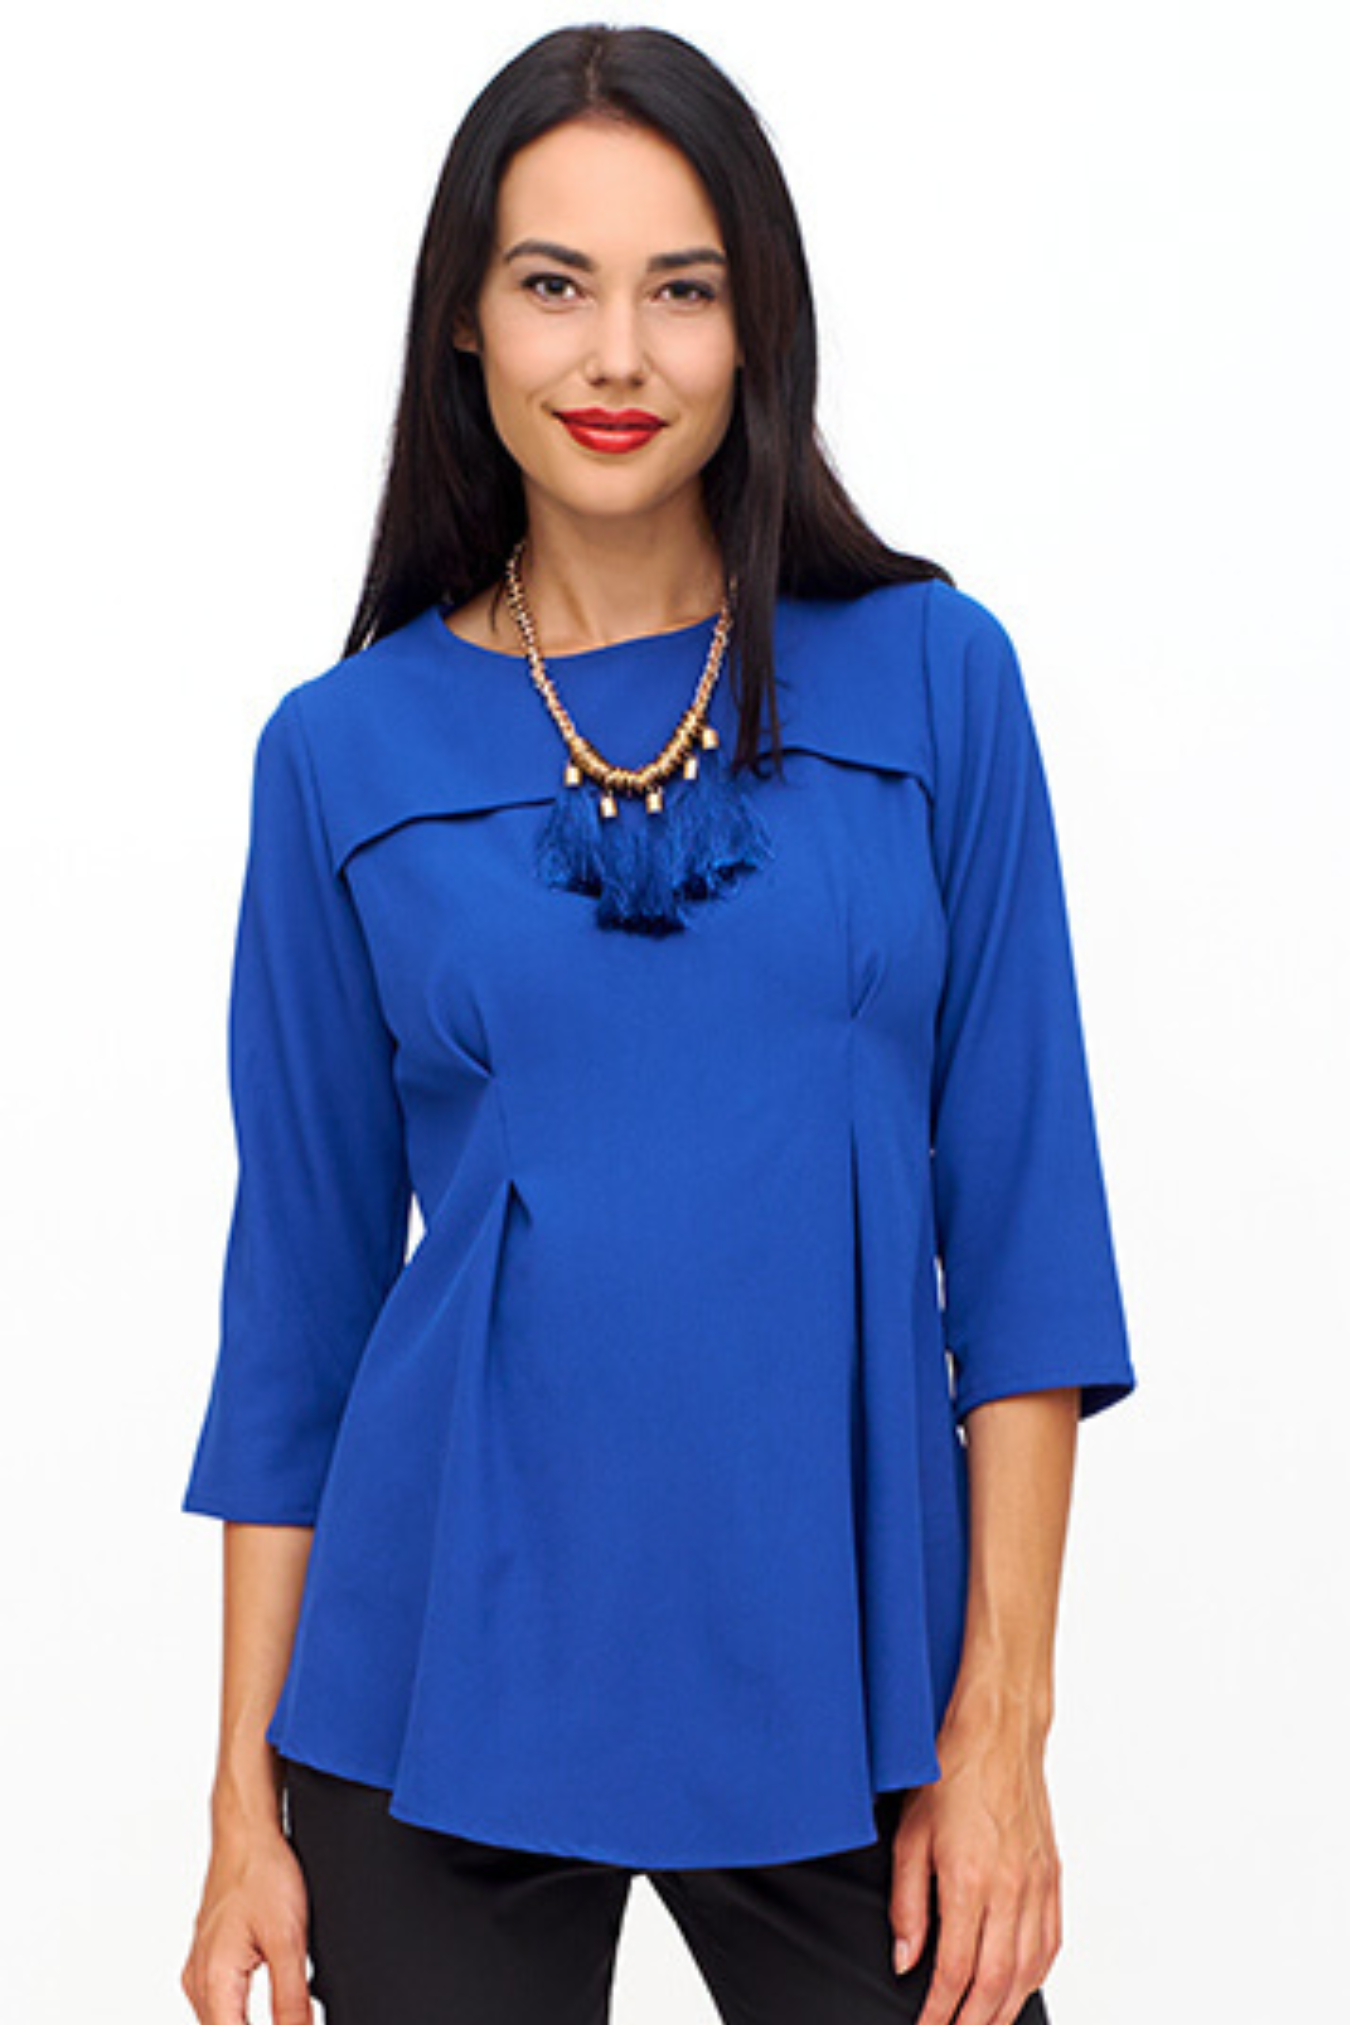 Блузка для беременных ярко-синего цвета интернет магазин Happy-Moms.ru